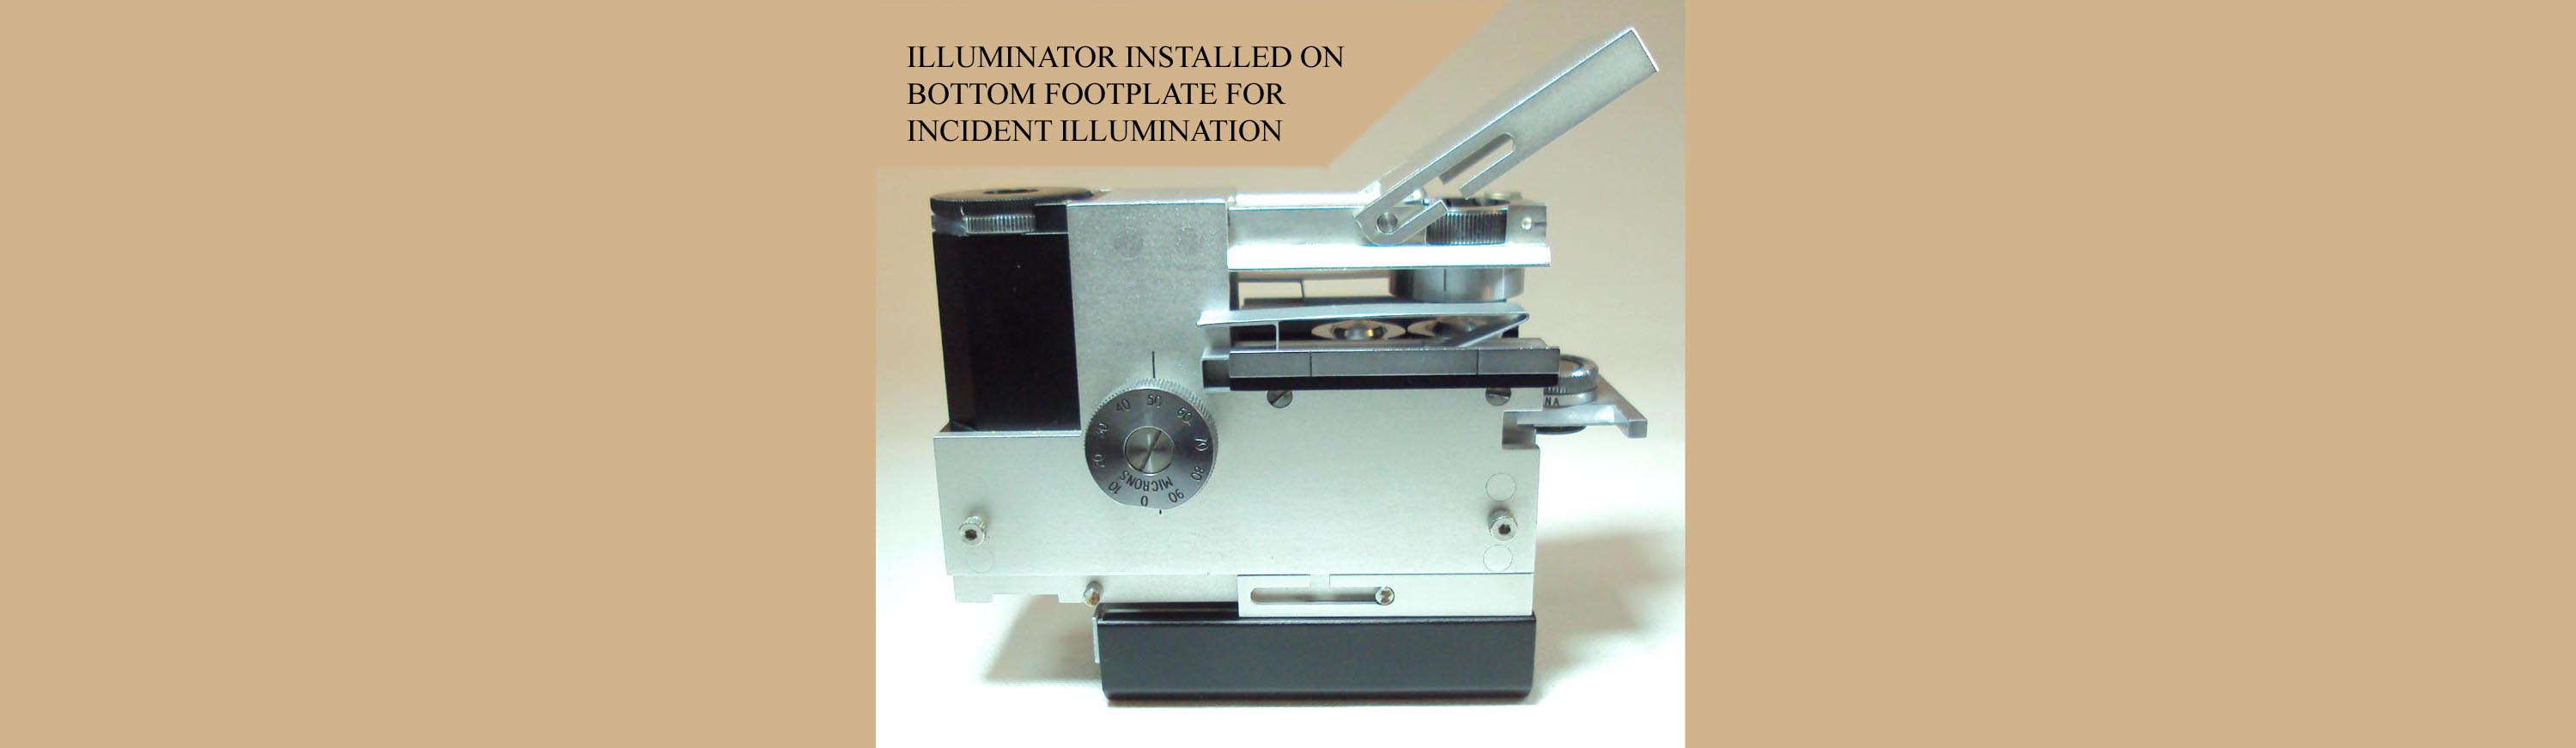 Cooke-McArthur Microscope Illuminator installed for incident illumination